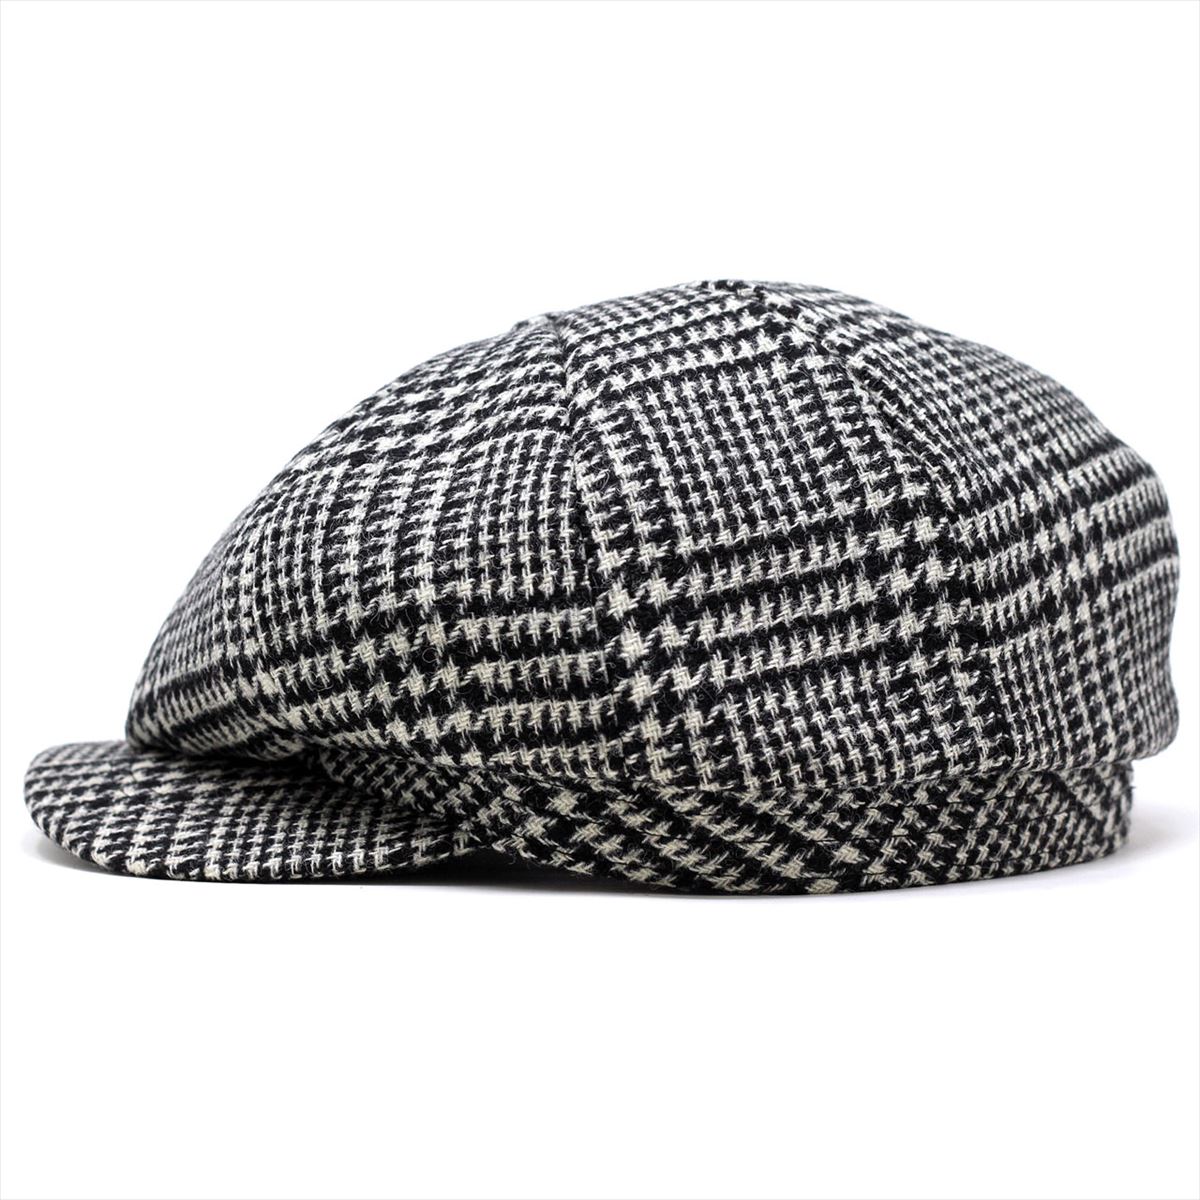 物品 ハンチング帽 キャスケット ツイード メンズ ツバ付き 黒白 シンプル 帽子